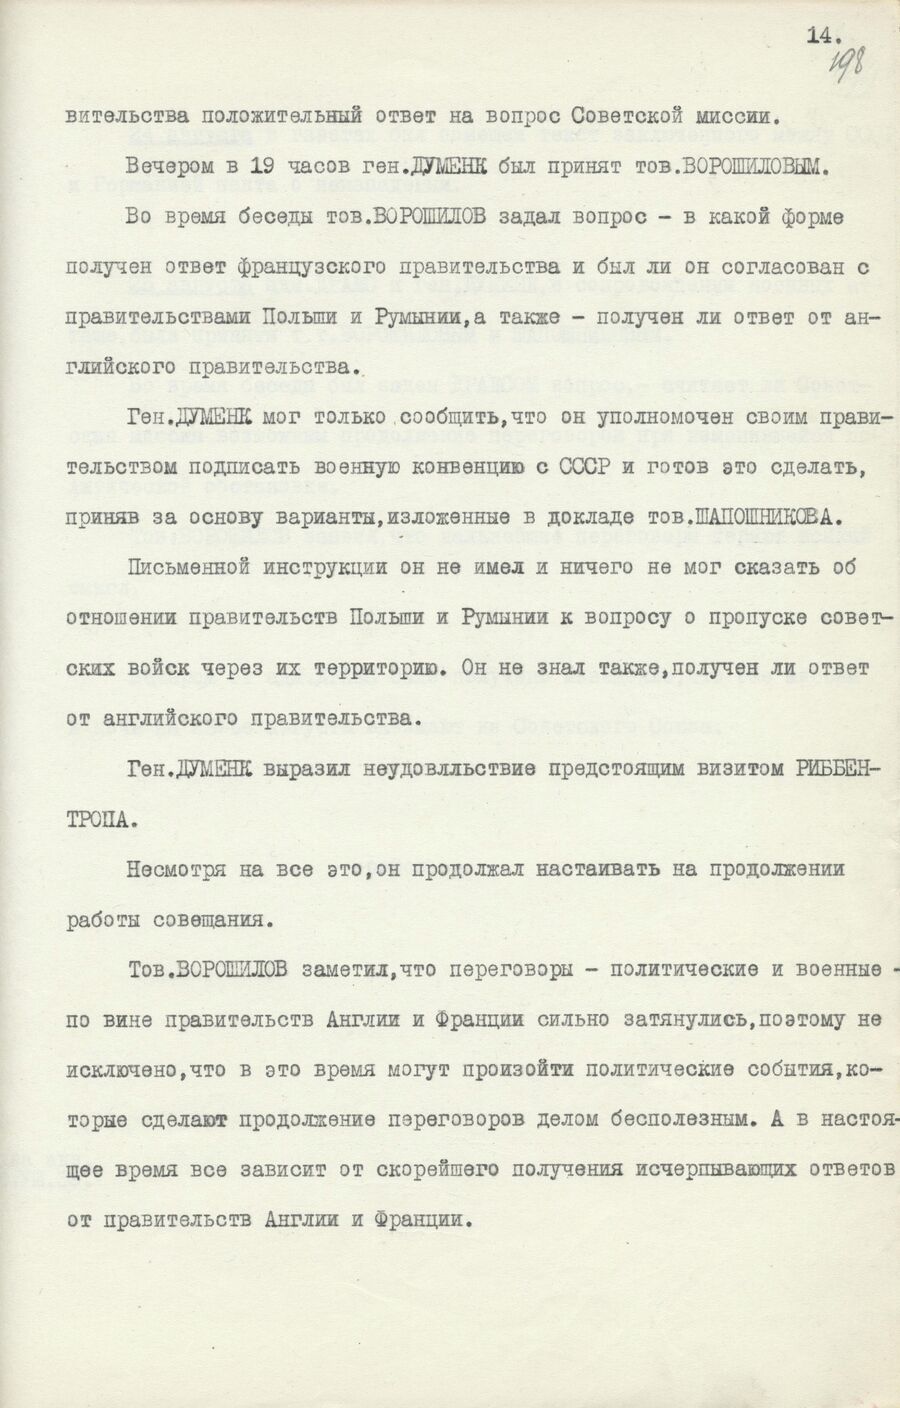 1939.08.26 Отчет о работе совещания. Лист 14